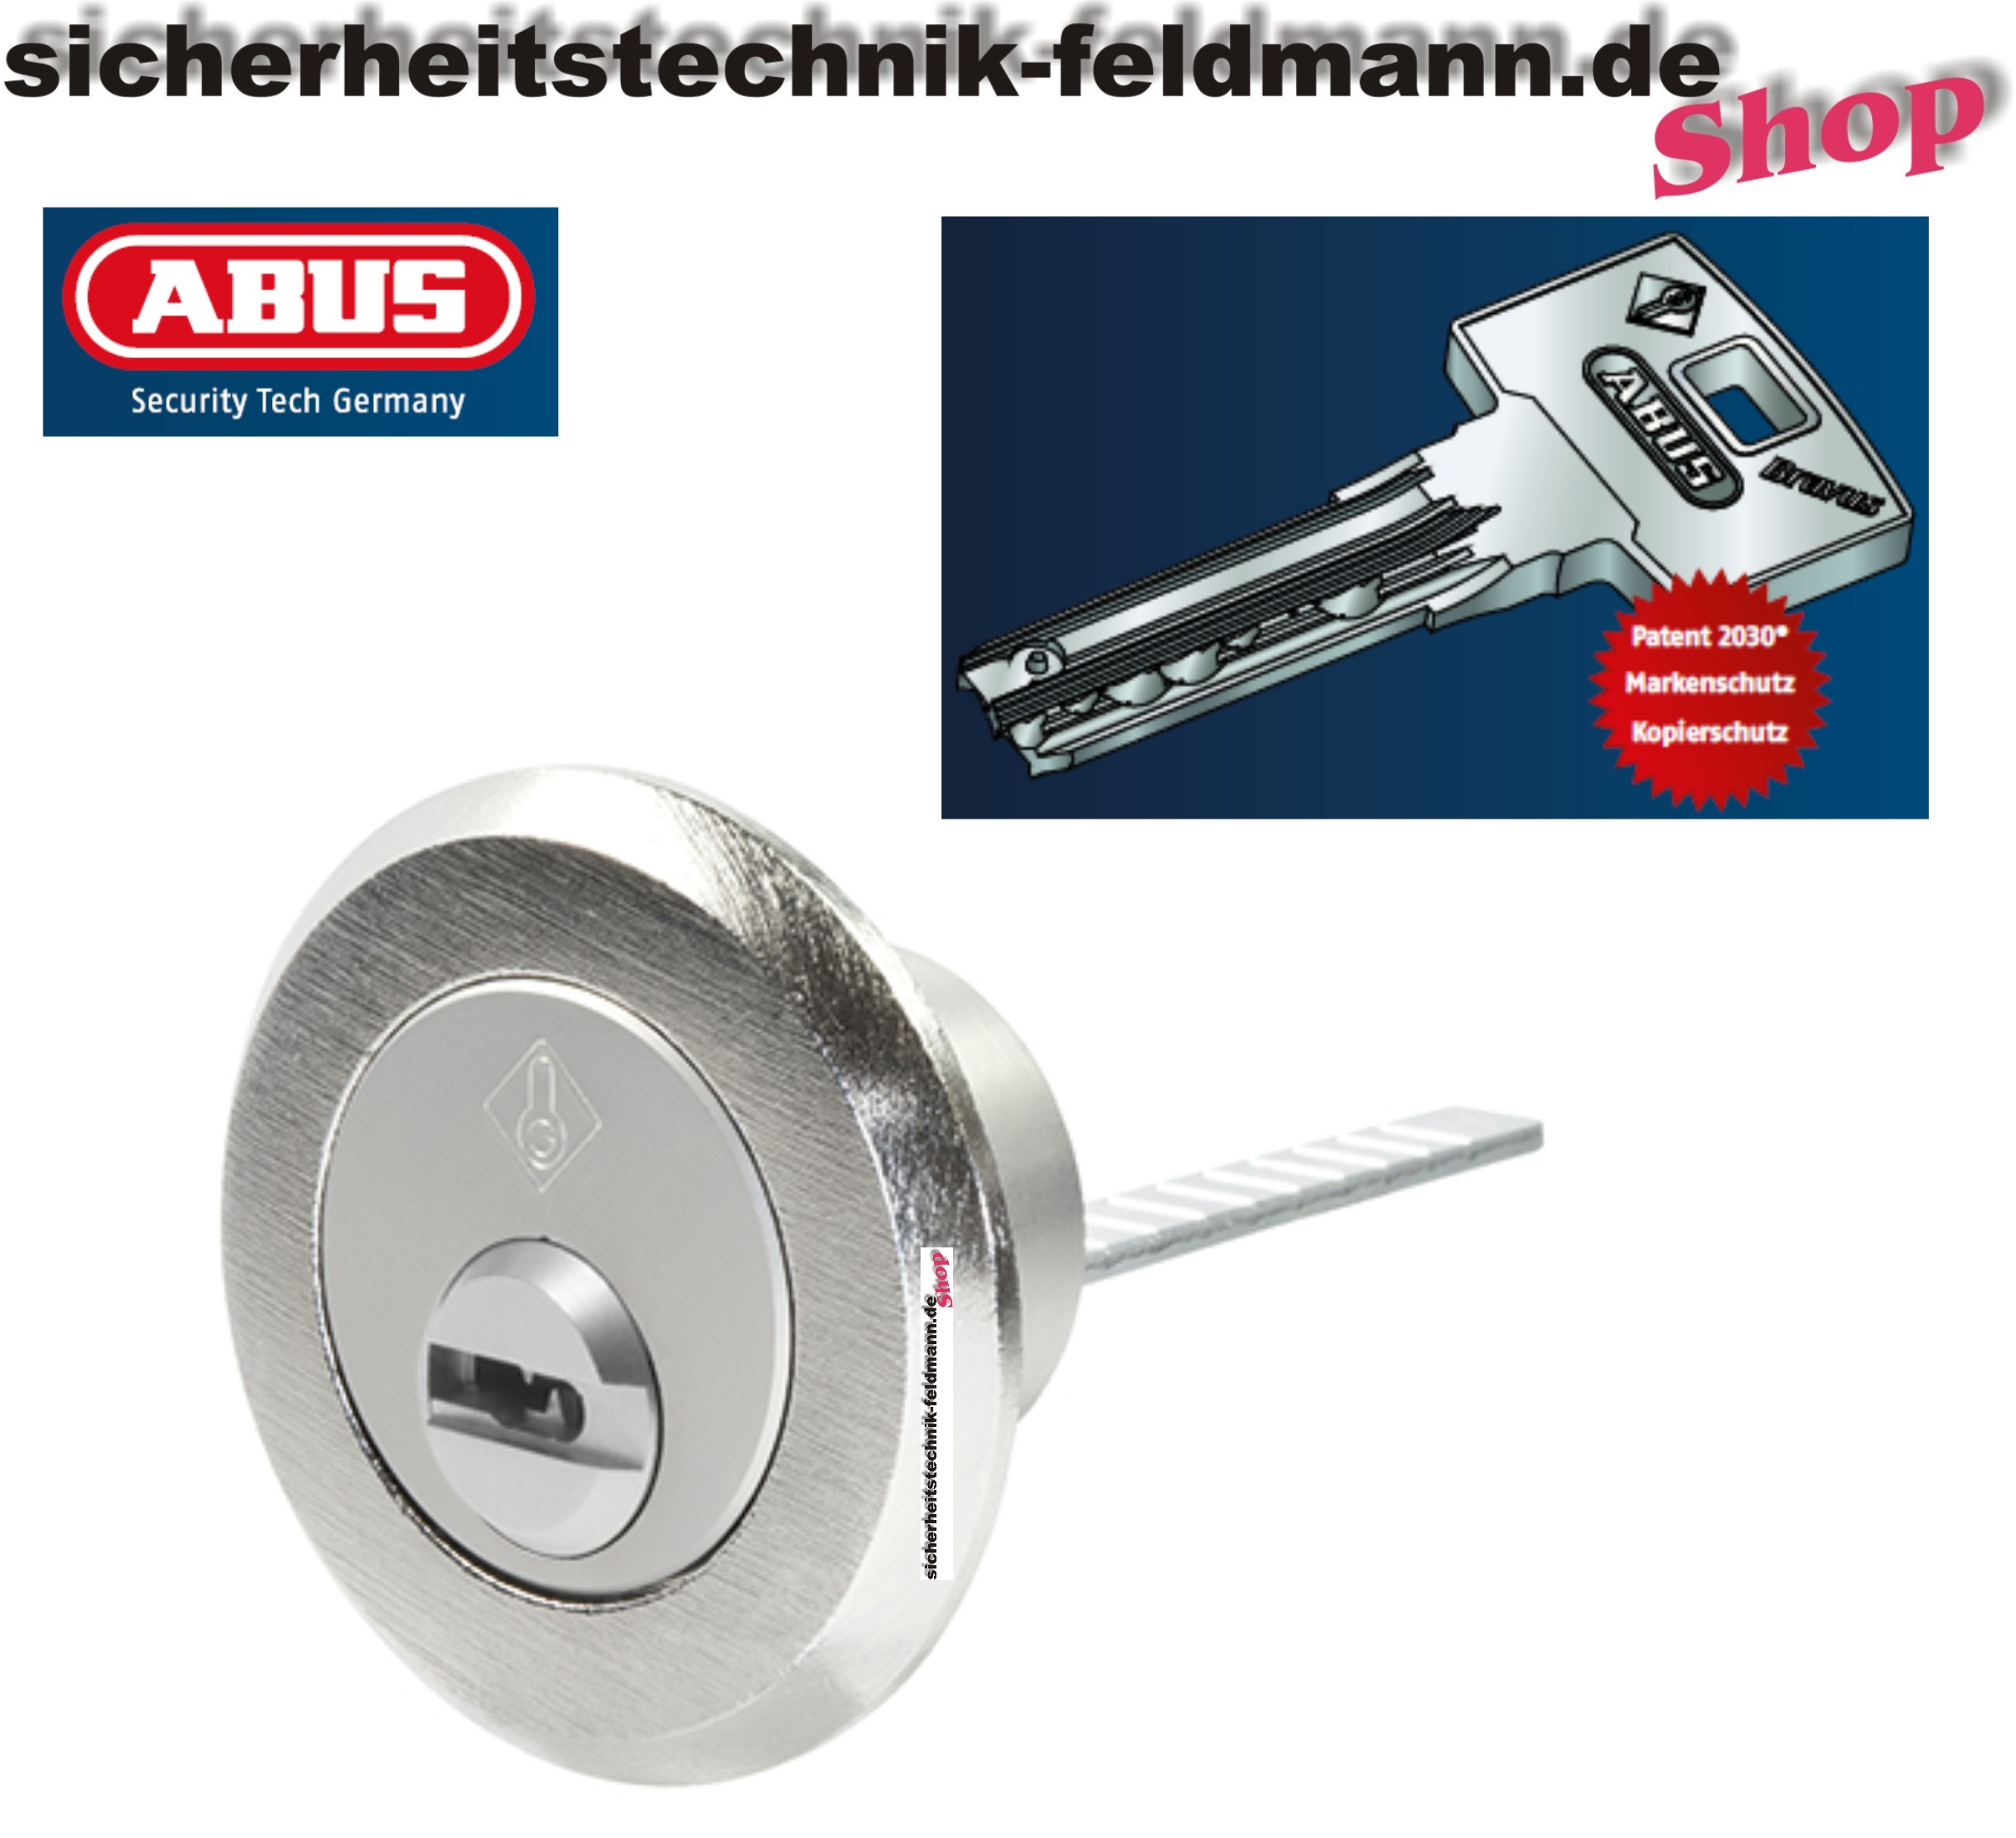 ABUS Bravus3000 Aussenzylinder rund D=28mm für Kastenschlösser, Sicherheitstechnik für Haus, Büro günstig kaufen